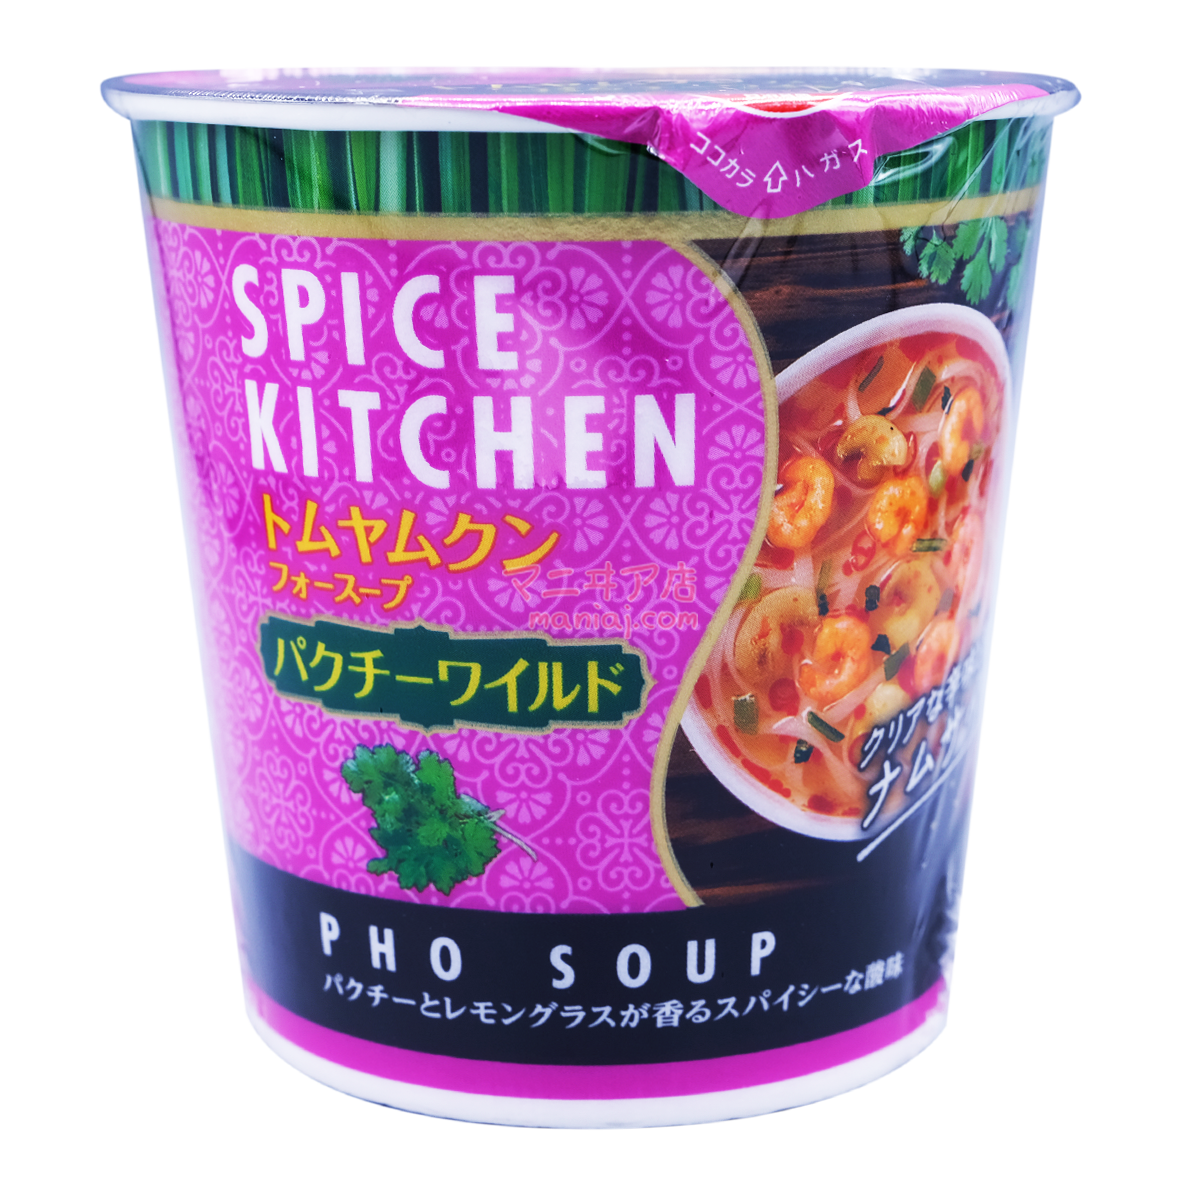 Spice Kitchen Tom Yum Kung Chicken Soup with Coriander